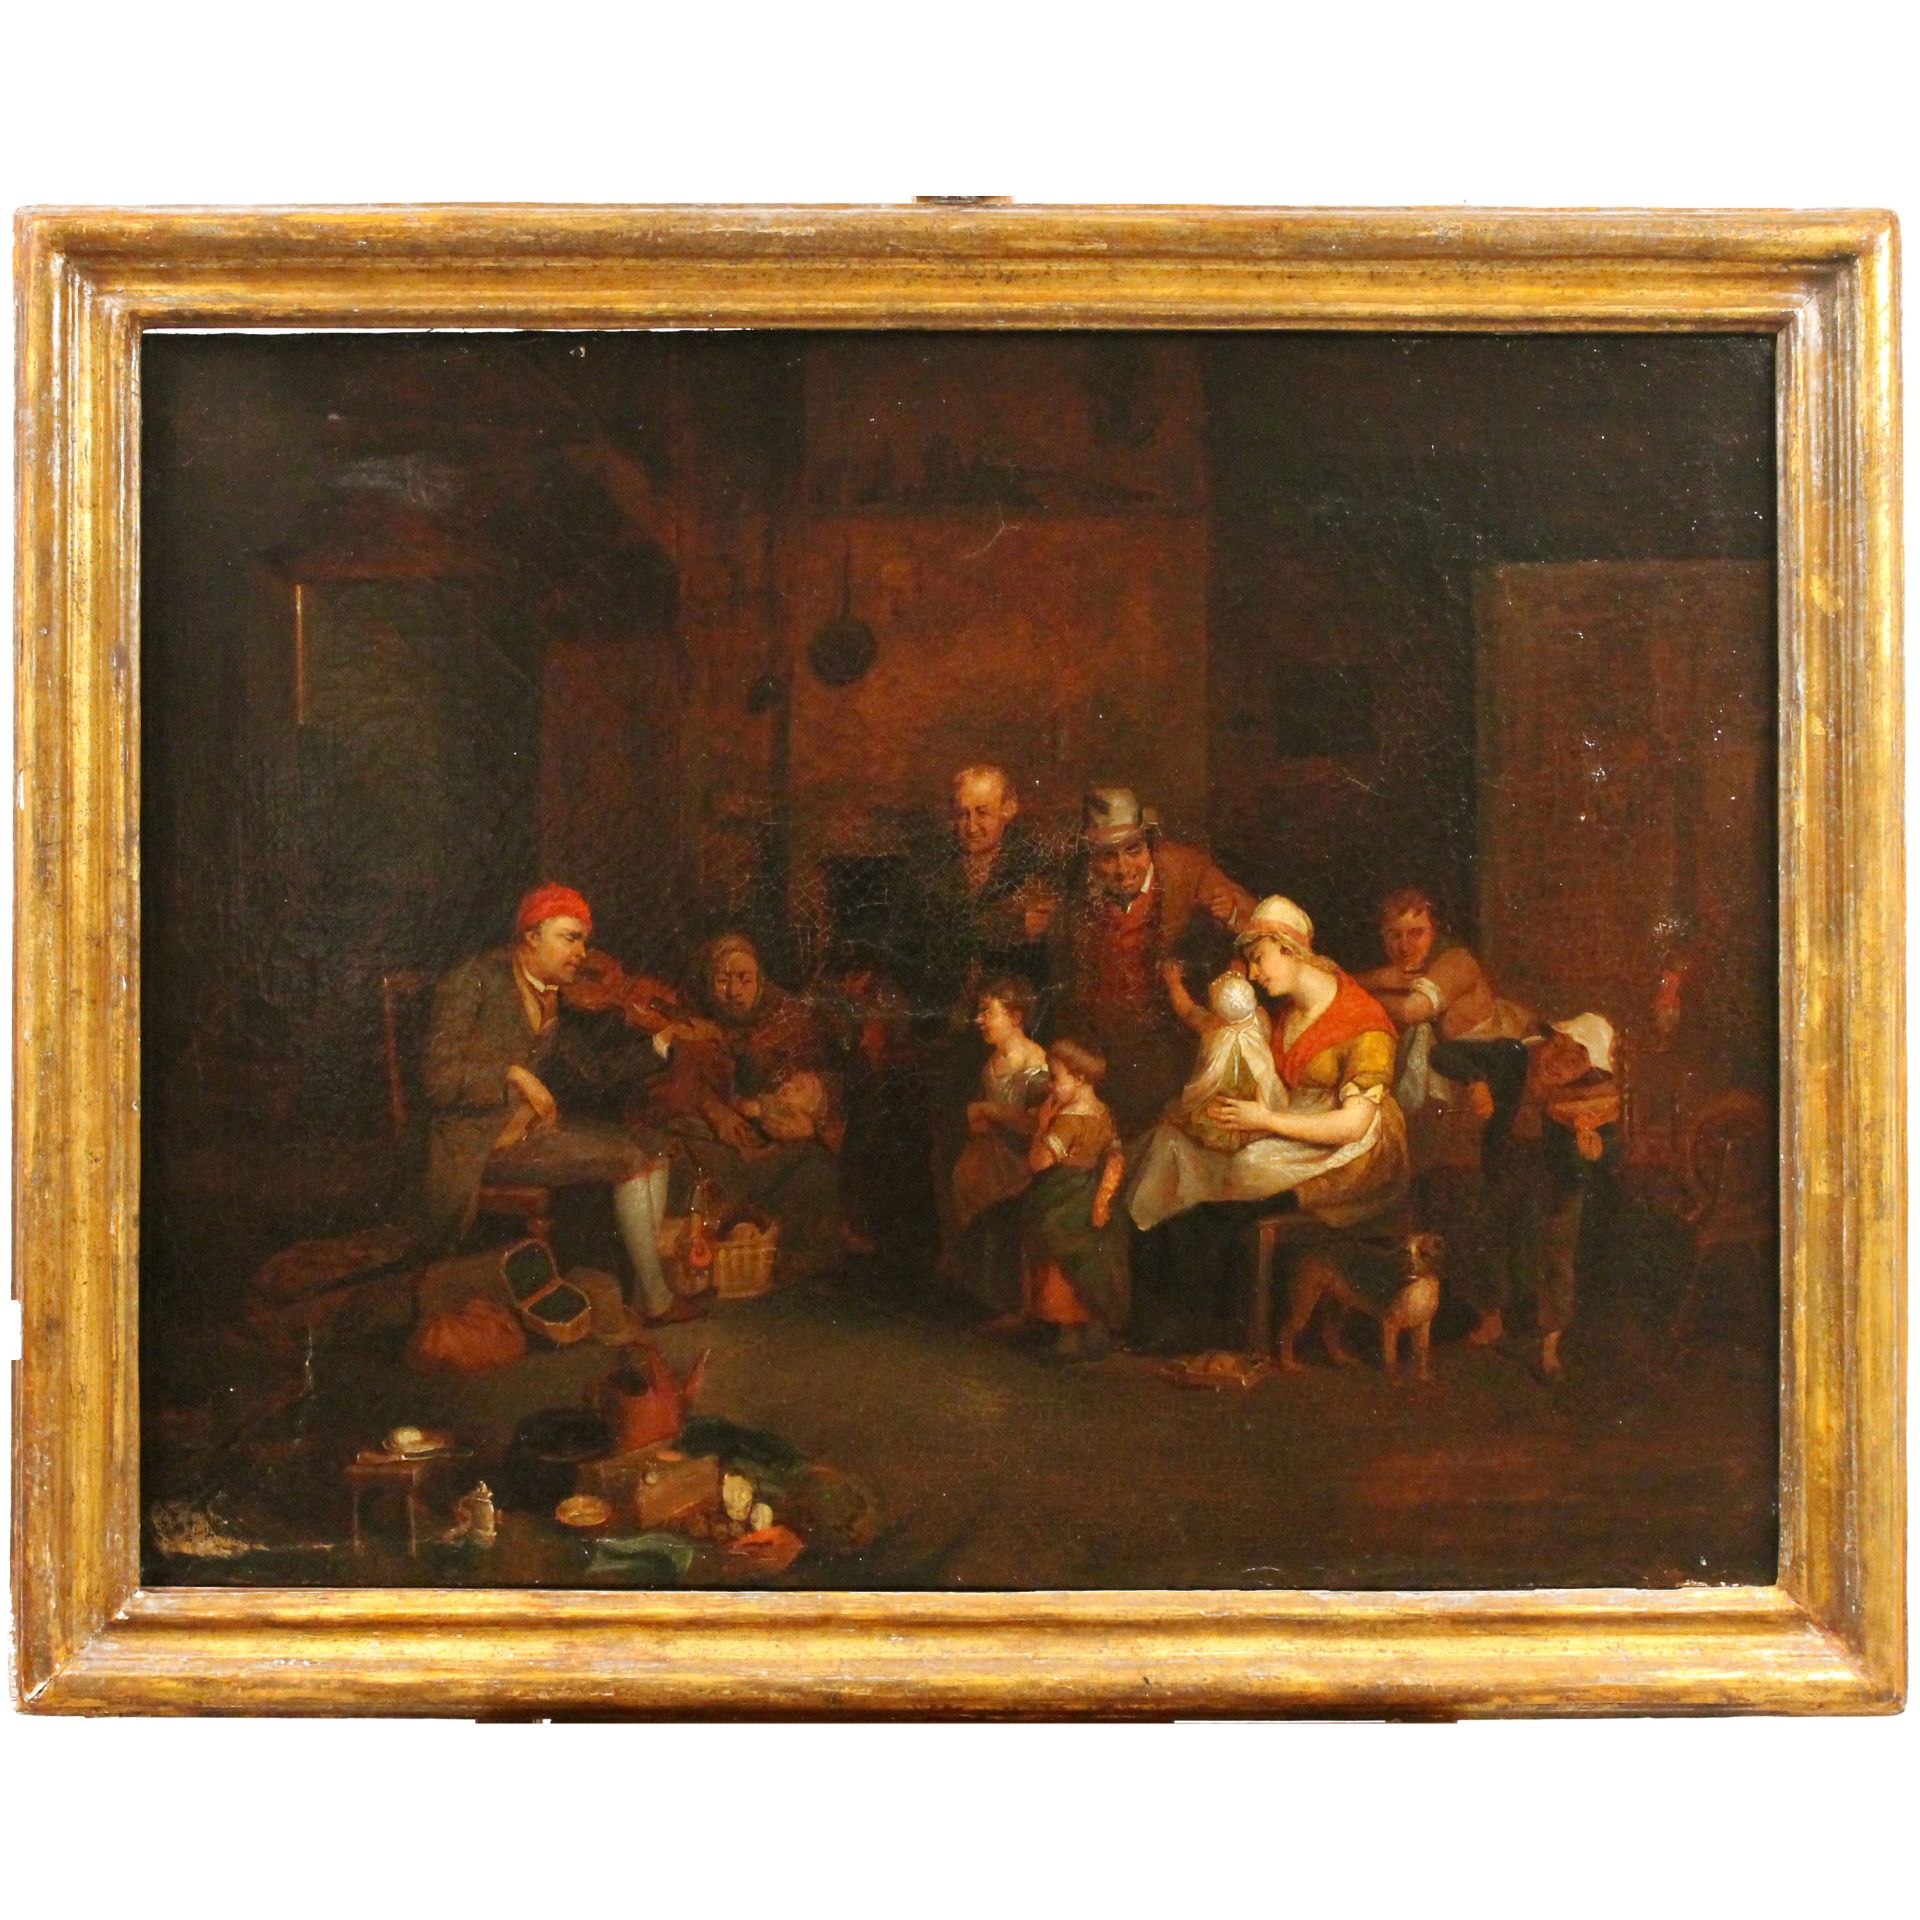 Scuola fiamminga del secolo XVIII "Scena di interno con figure" - 18th century Flemish school "Inter